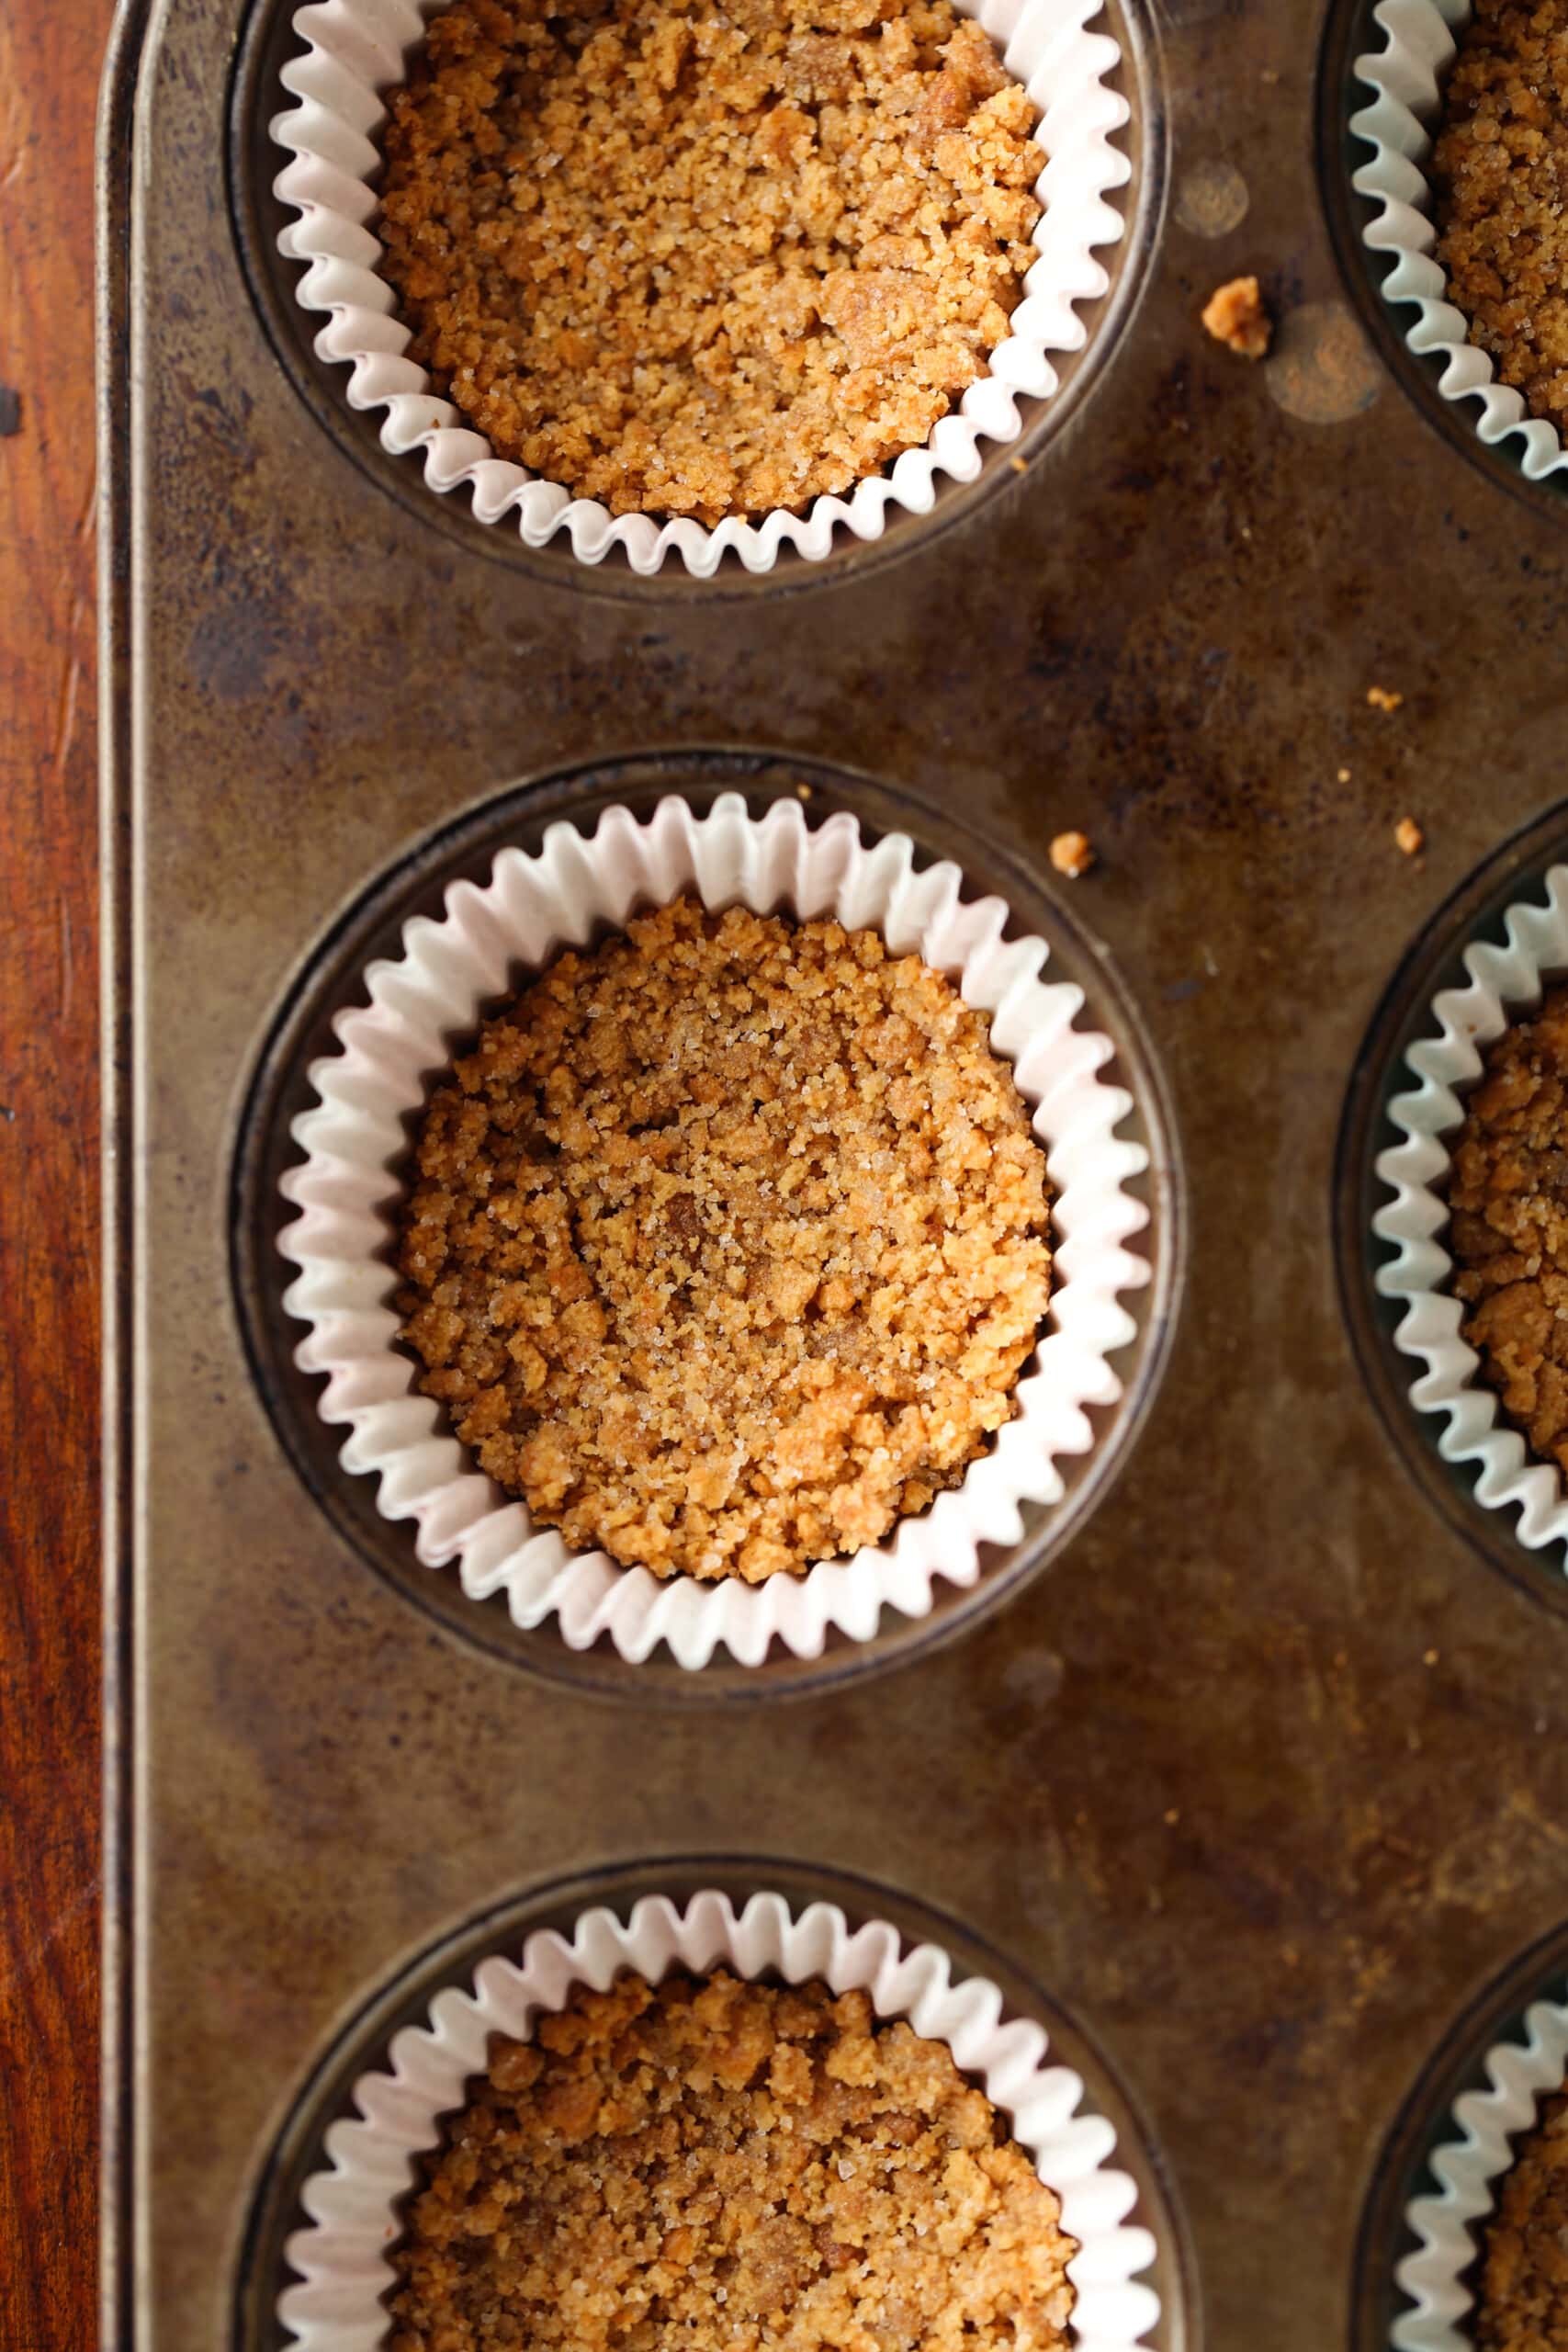 Graham cracker korst in een cupcake voering gebakken in een muffinvorm